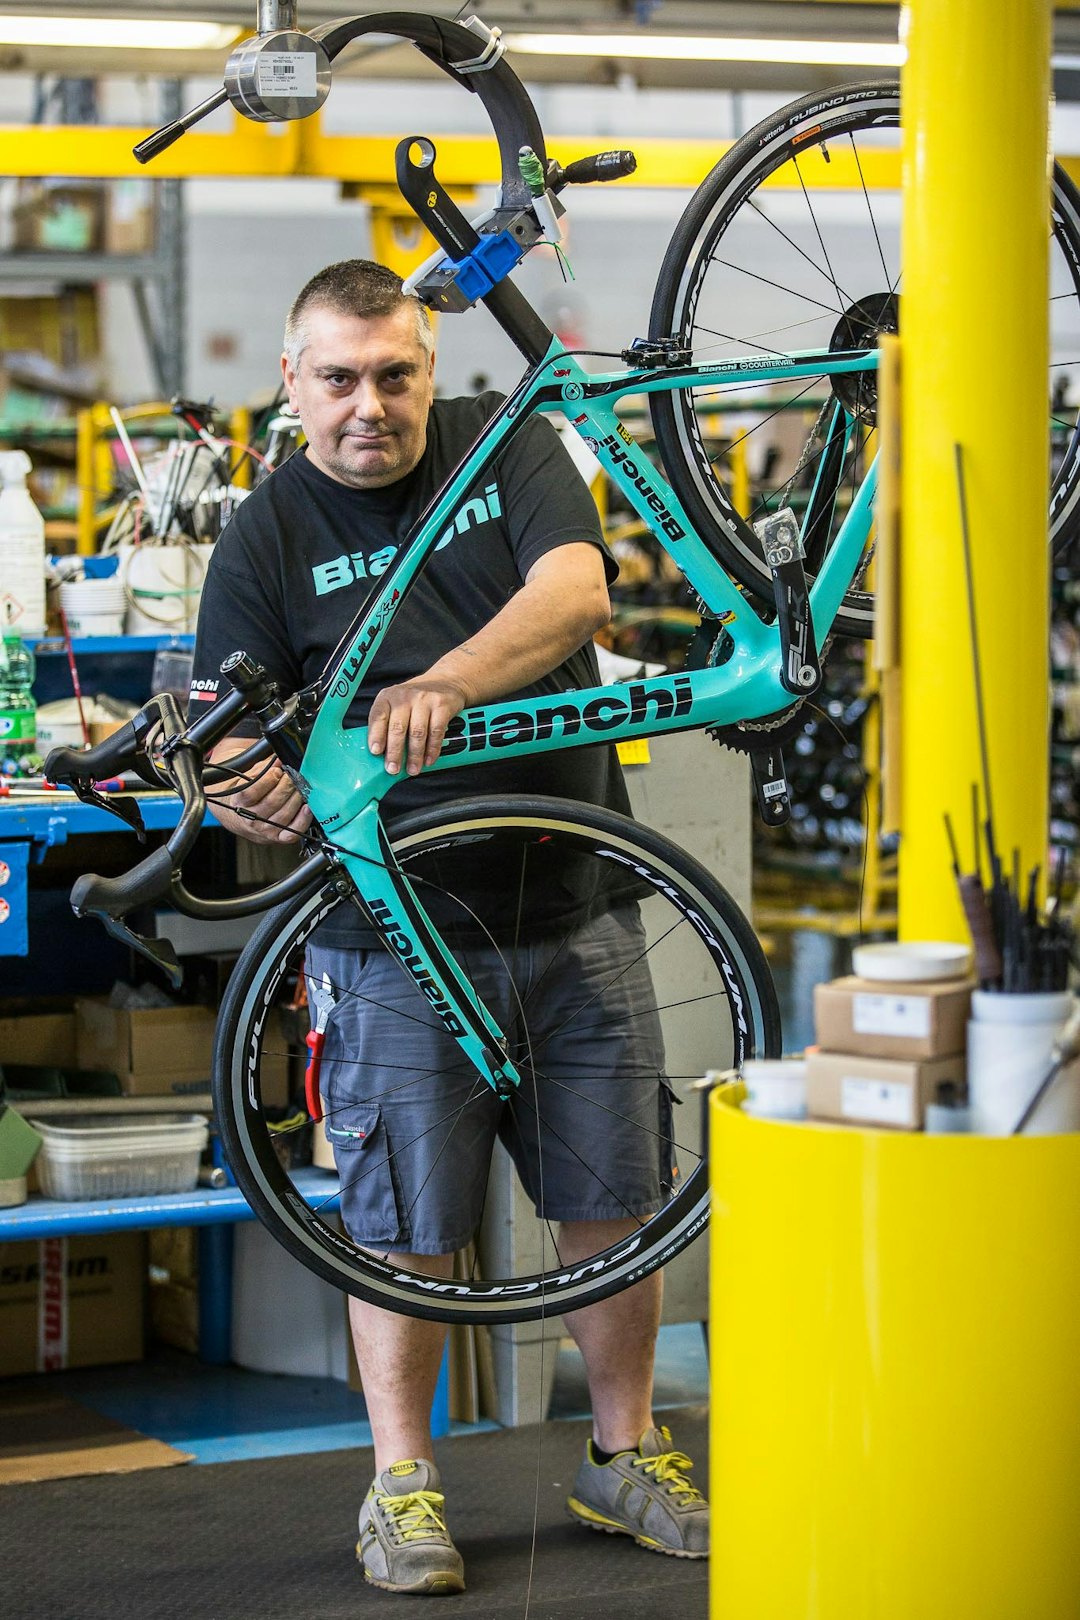 HVER MANN – SIN SYKKEL: Bianchi er stolte av at de ikke setter sammen syklene etter samlebåndsprinsipp, men at hver sykkel har en skaper som setter den sammen. Foto: Tor Simen Ulstein.